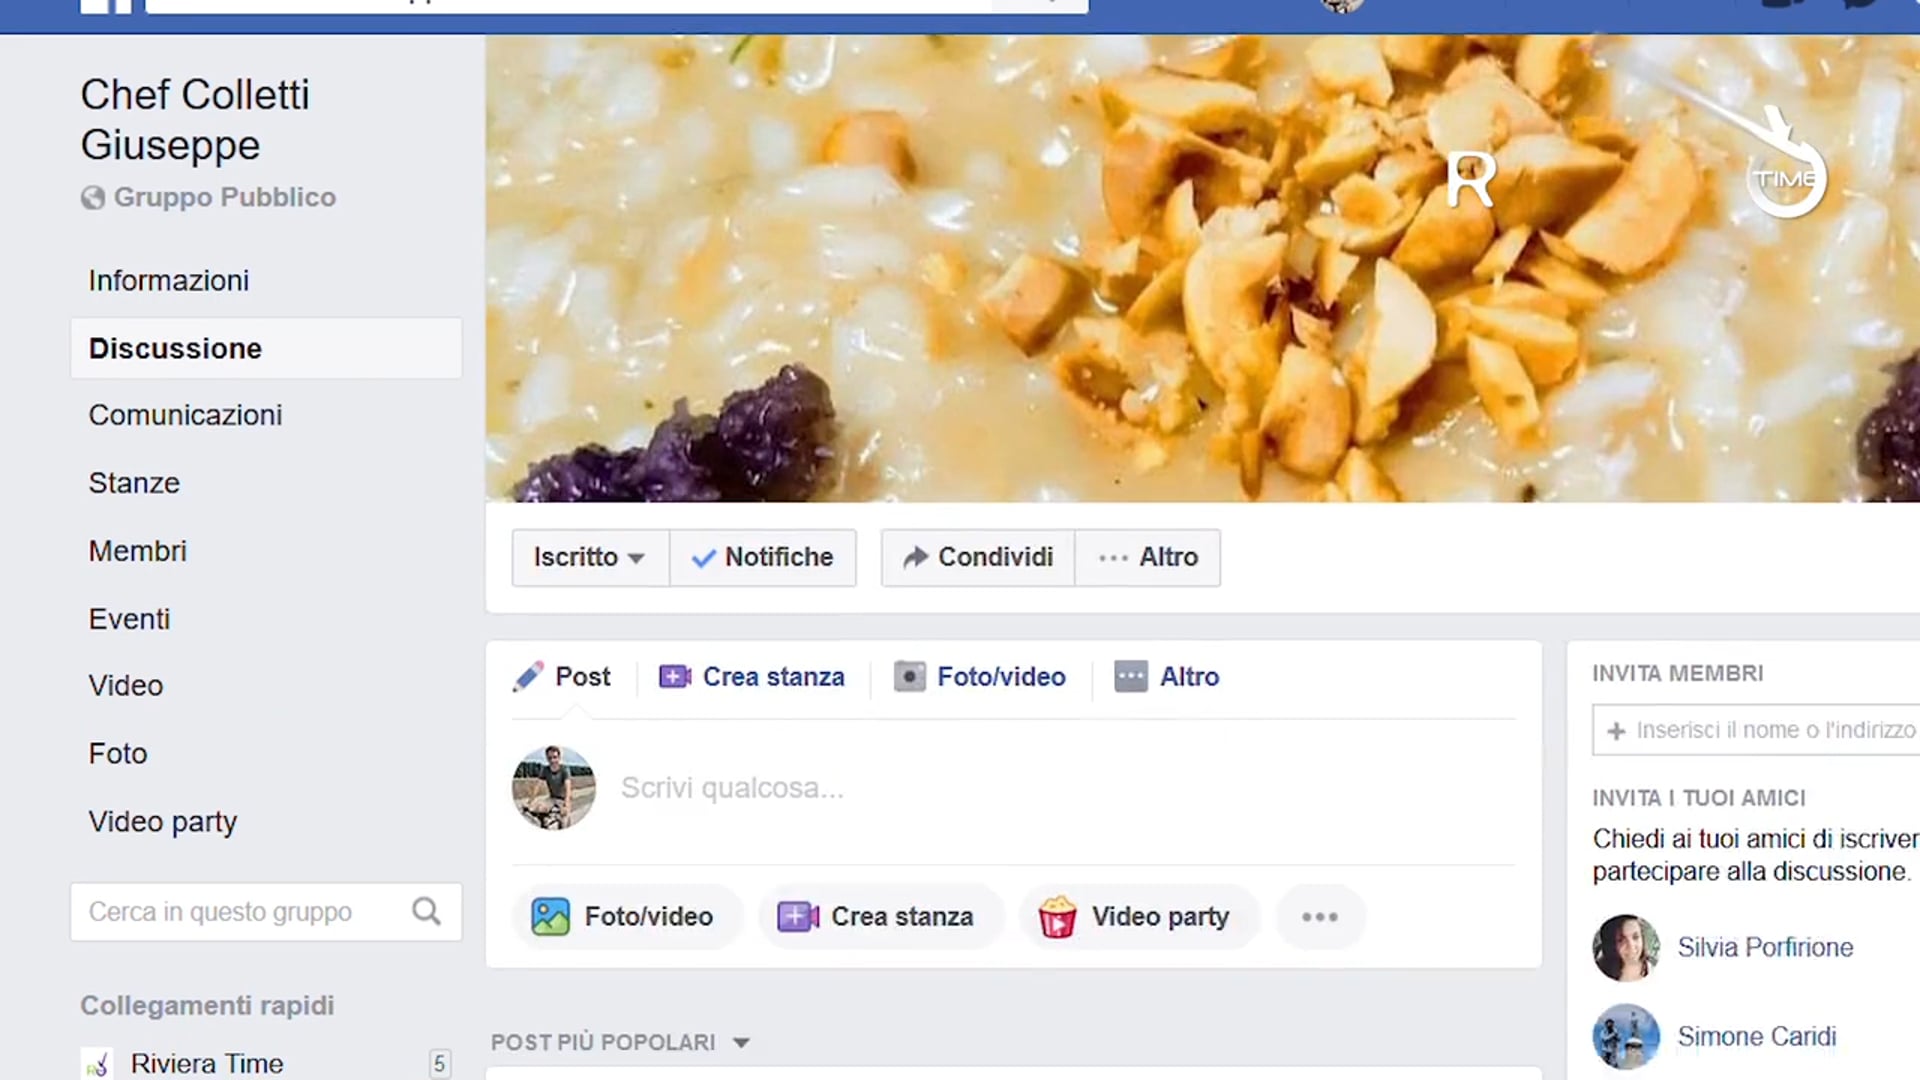 Semplicità e passione, la ricetta vincente di chef Colletti e del suo gruppo facebook da record